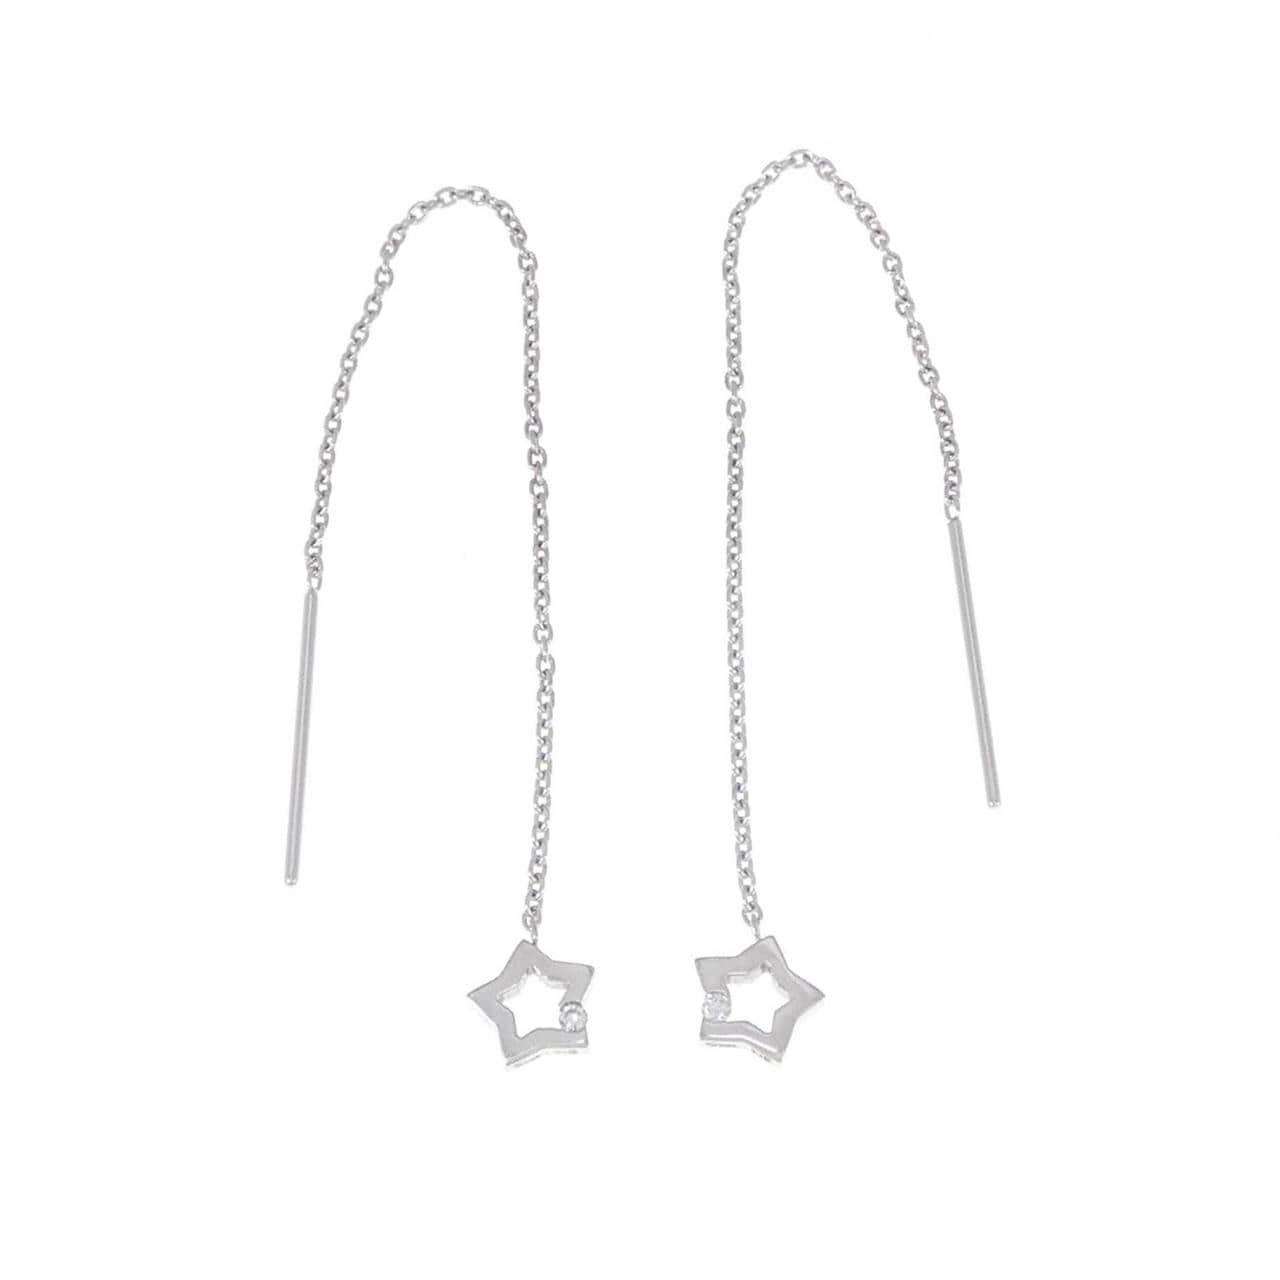 STAR JEWELRY earrings 0.02CT